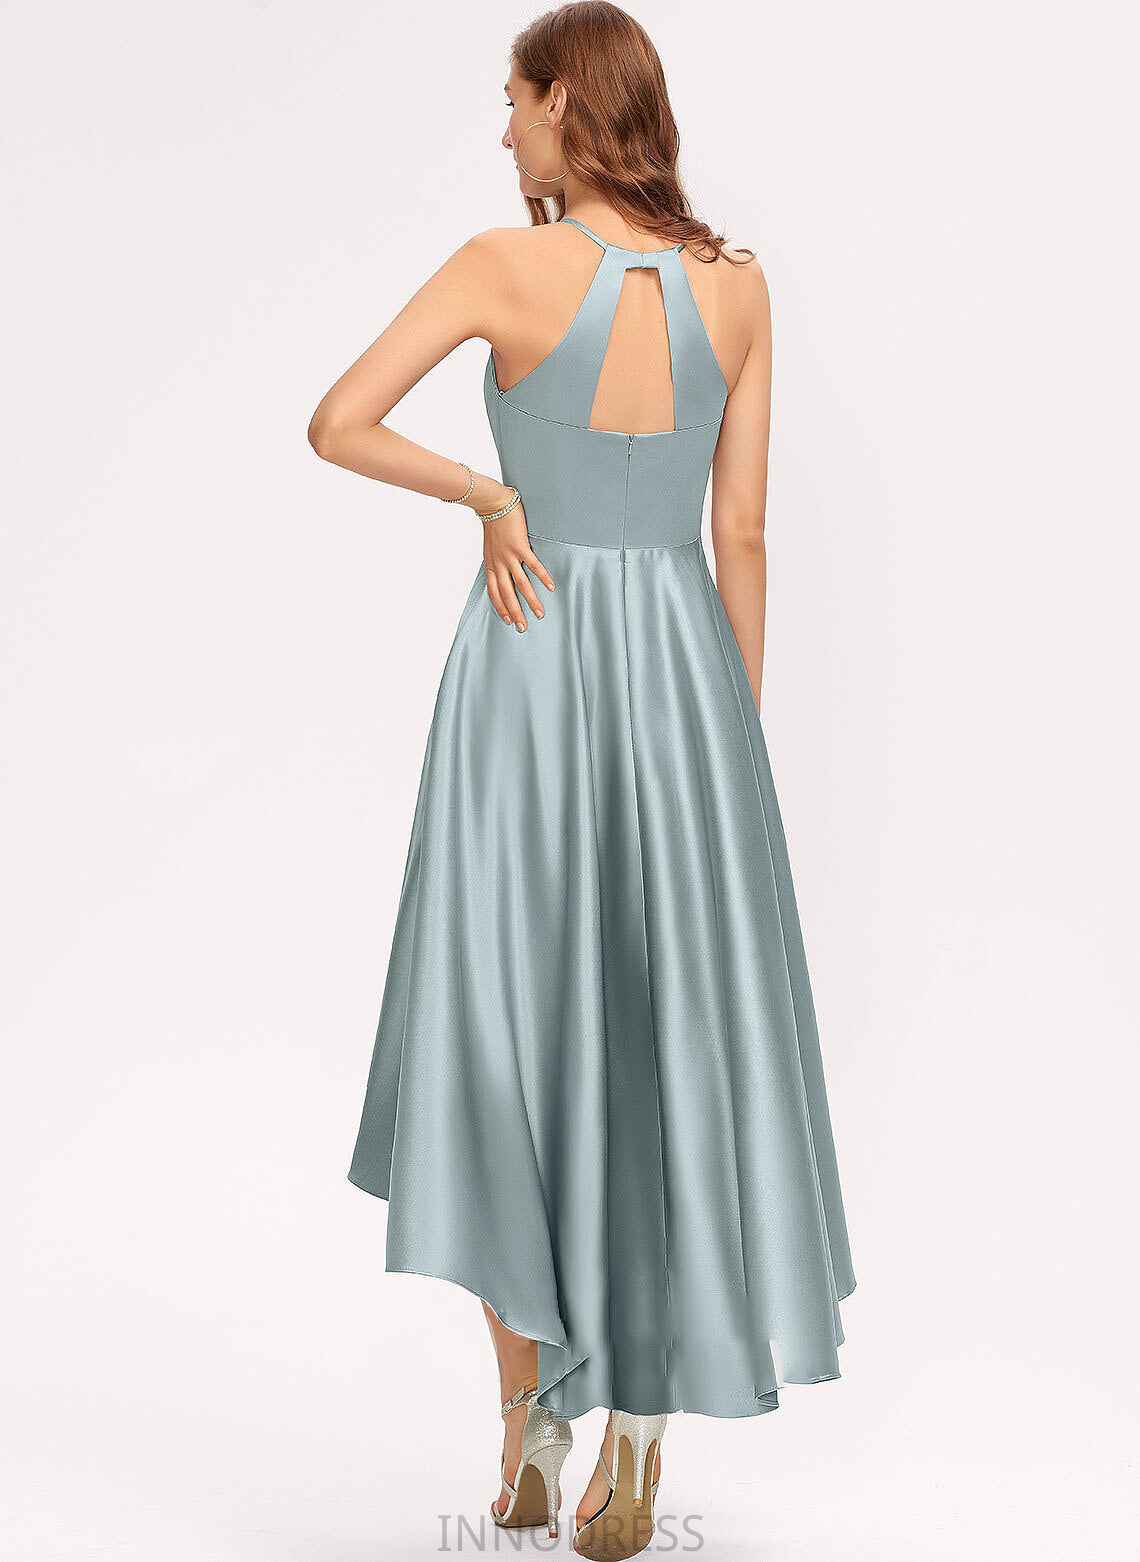 Fabric A-Line Silhouette Asymmetrical Neckline Length Pockets ScoopNeck Embellishment Desirae Natural Waist A-Line/Princess